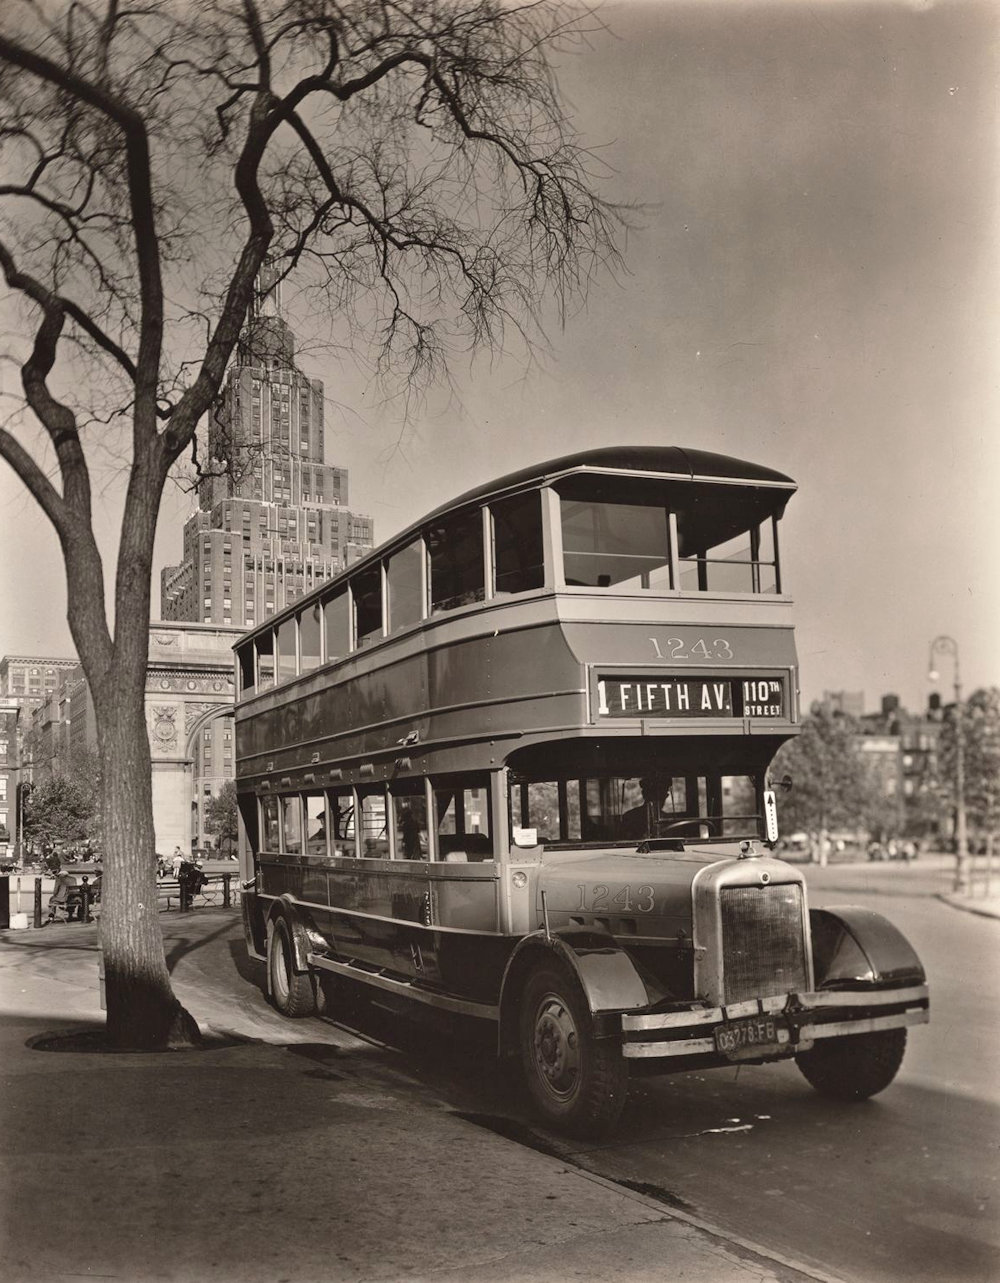 Fifth Avenue double-decker bus in Washington Square